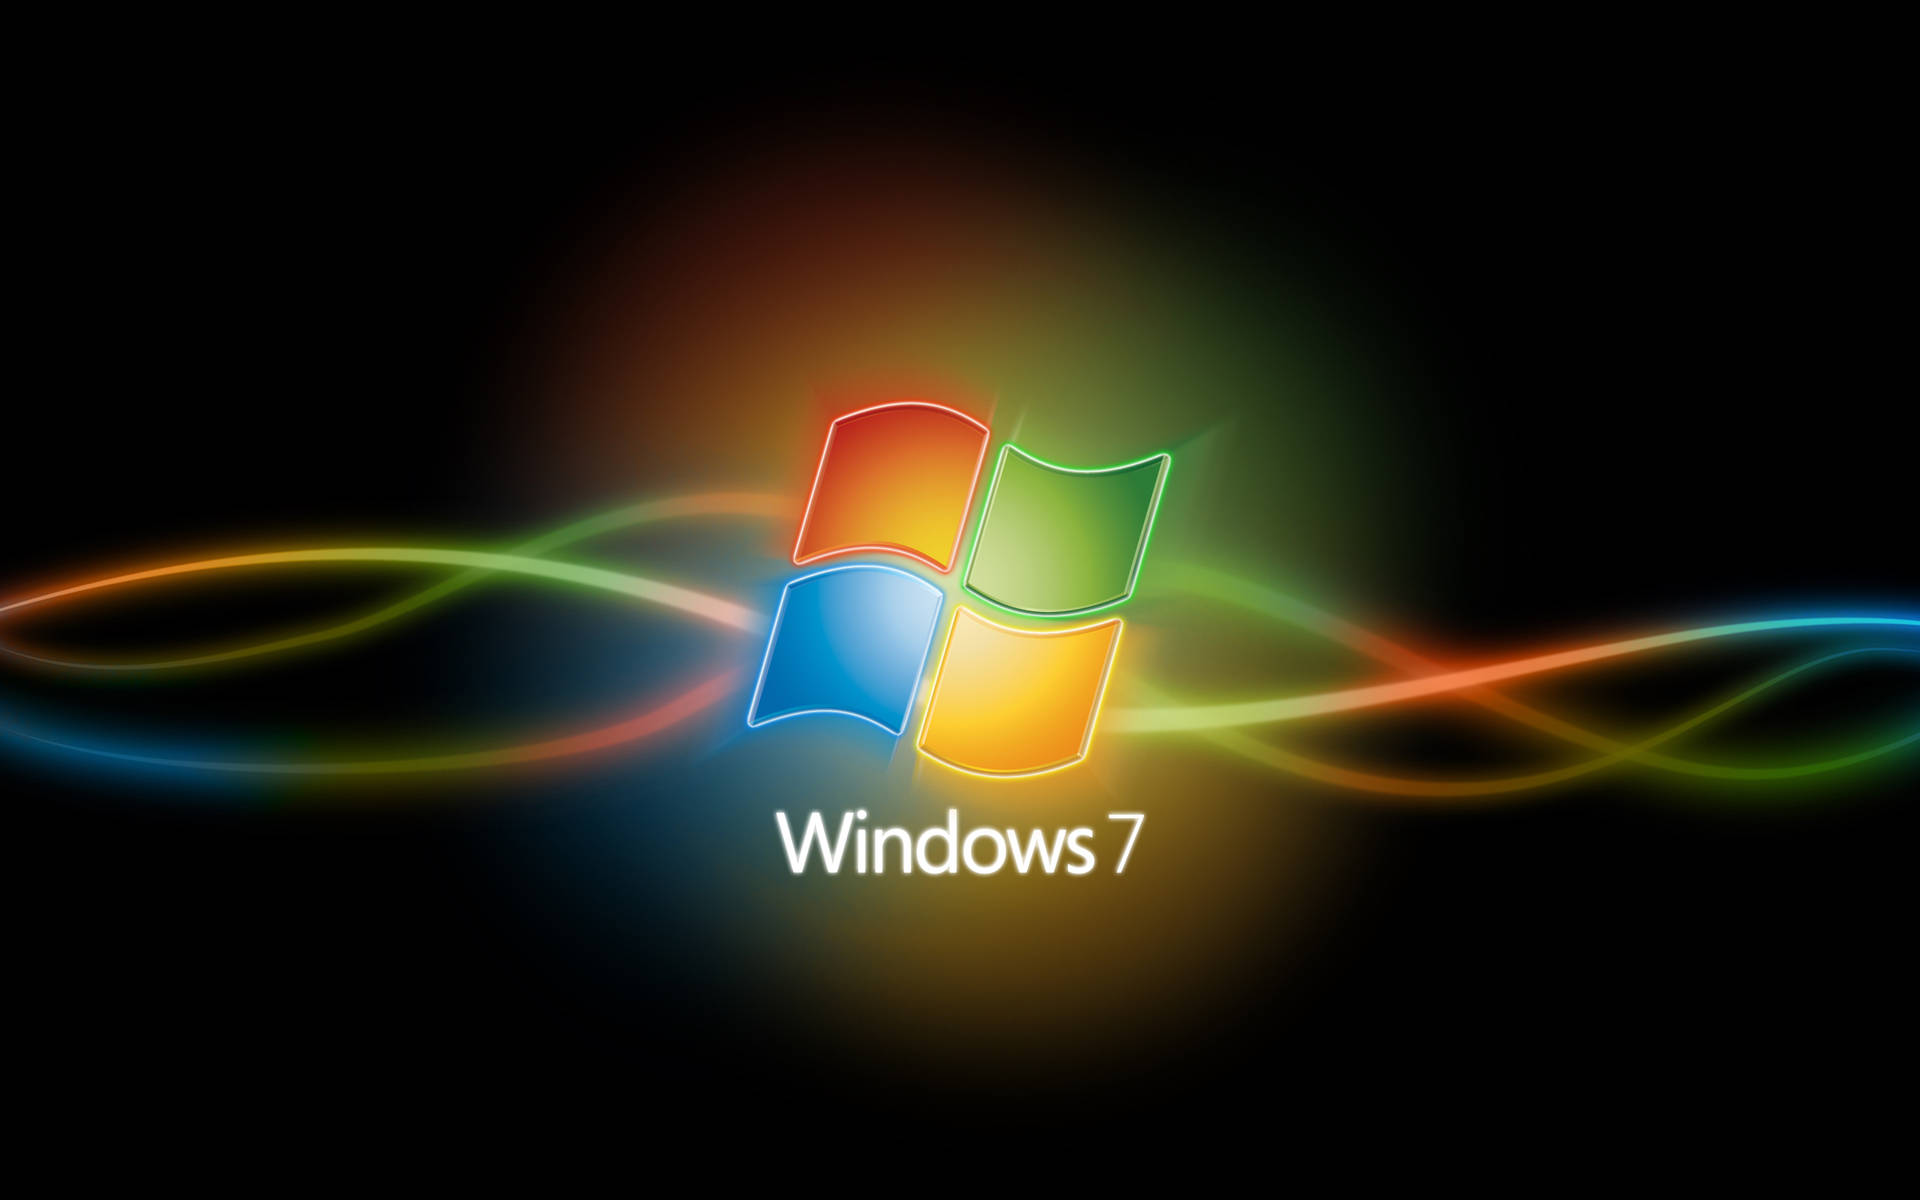 Neon Windows 7 Logo Background